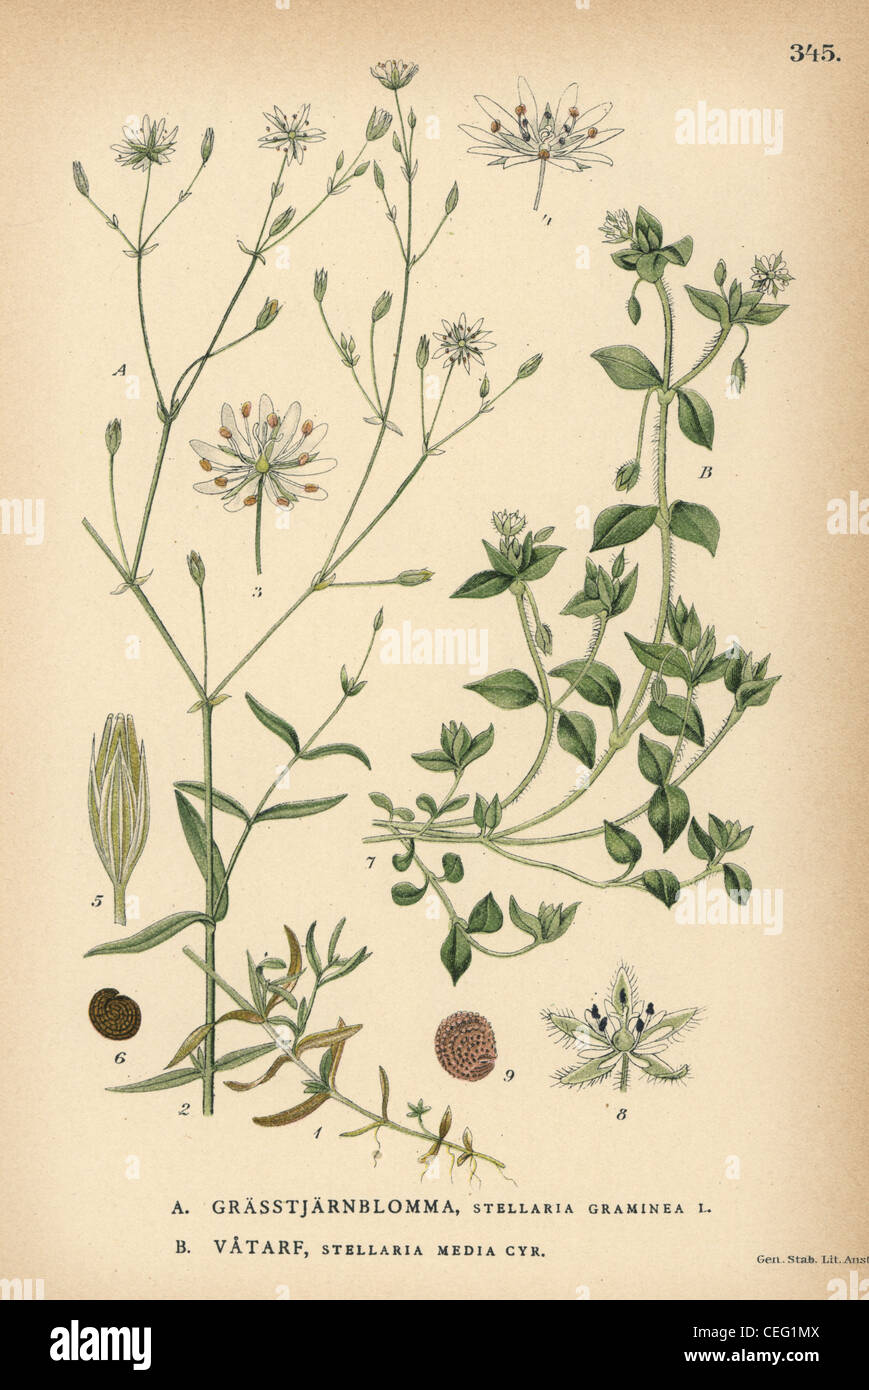 Grass-like starwort, Stellaria graminea, and common chickweed, Stellaria media. Stock Photo